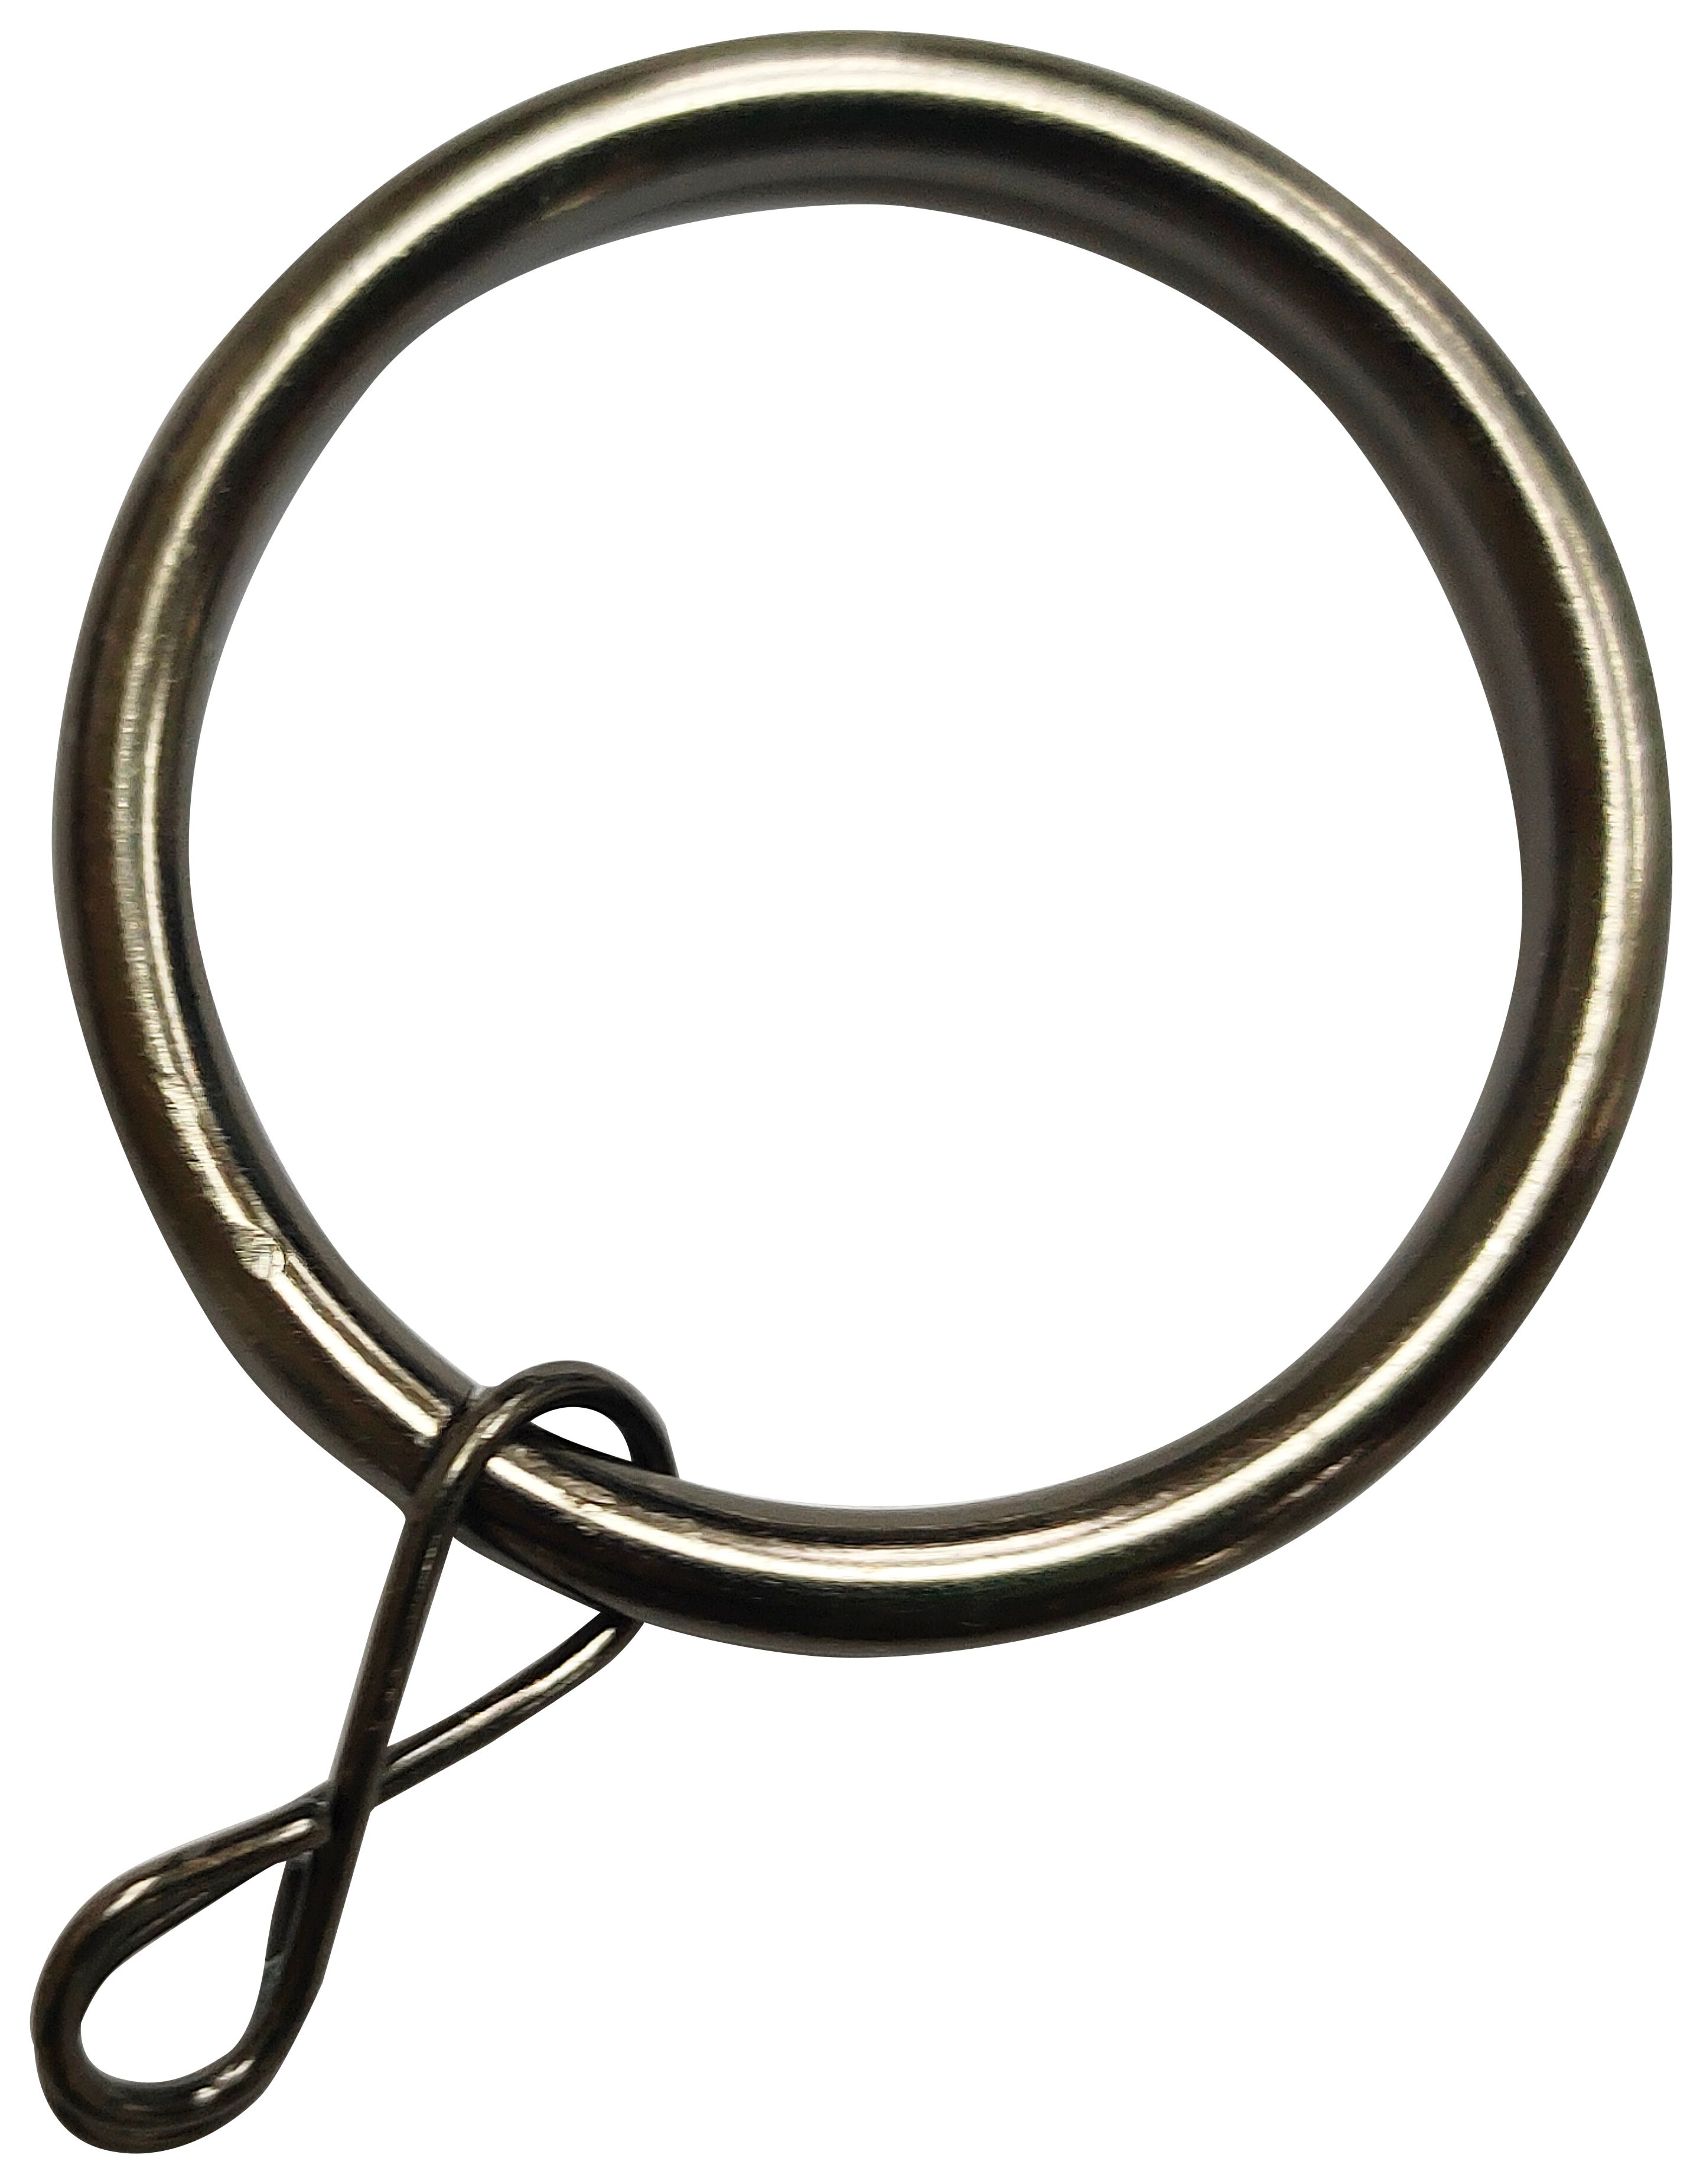 Image of Black Nickel 19mm Metal Curtain Rings - Pack of 10